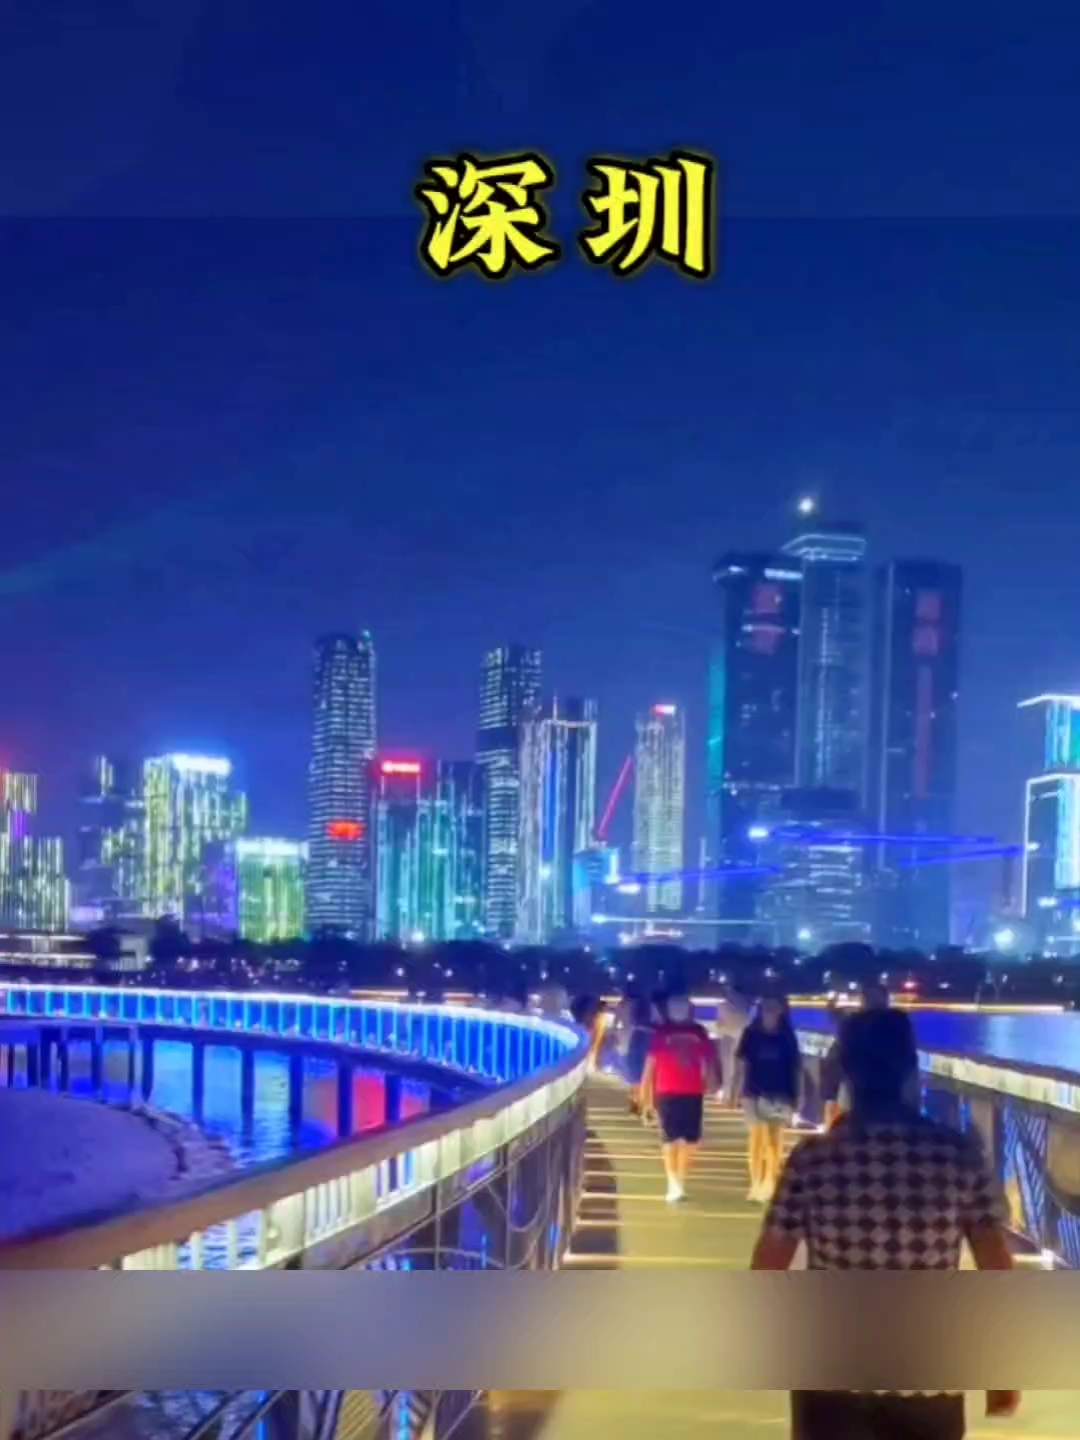 五一来深圳必打卡的地方#和朋友出去撒欢儿 #旅游推荐官 #我是旅行大玩家 #五一去哪玩